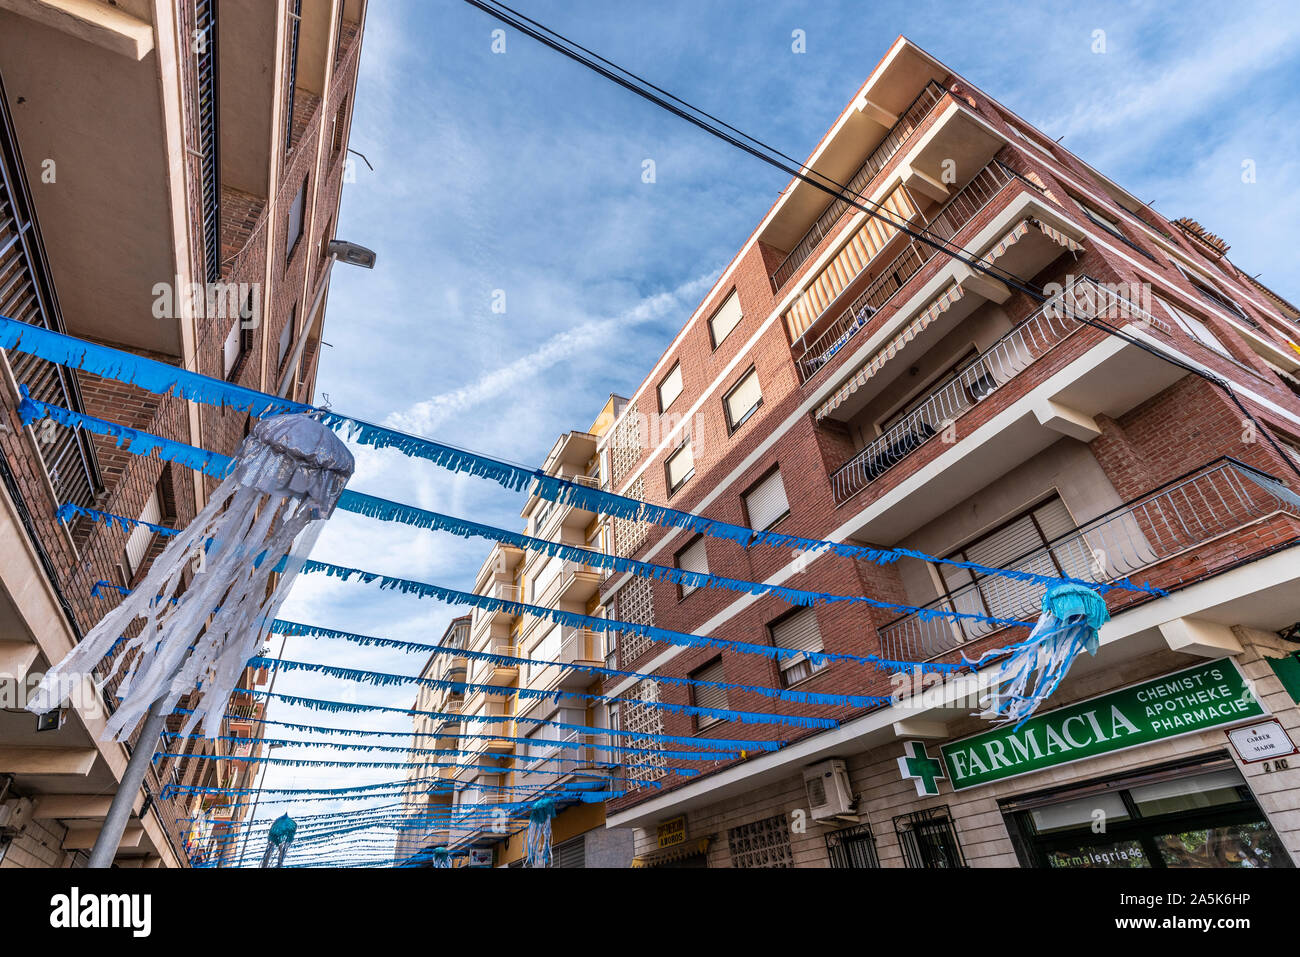 Décorations de rue La Marina, un village administré par la ville d'Elche, dans la province d'Alicante, sur la Costa Blanca espagnole par la mer Méditerranée Banque D'Images